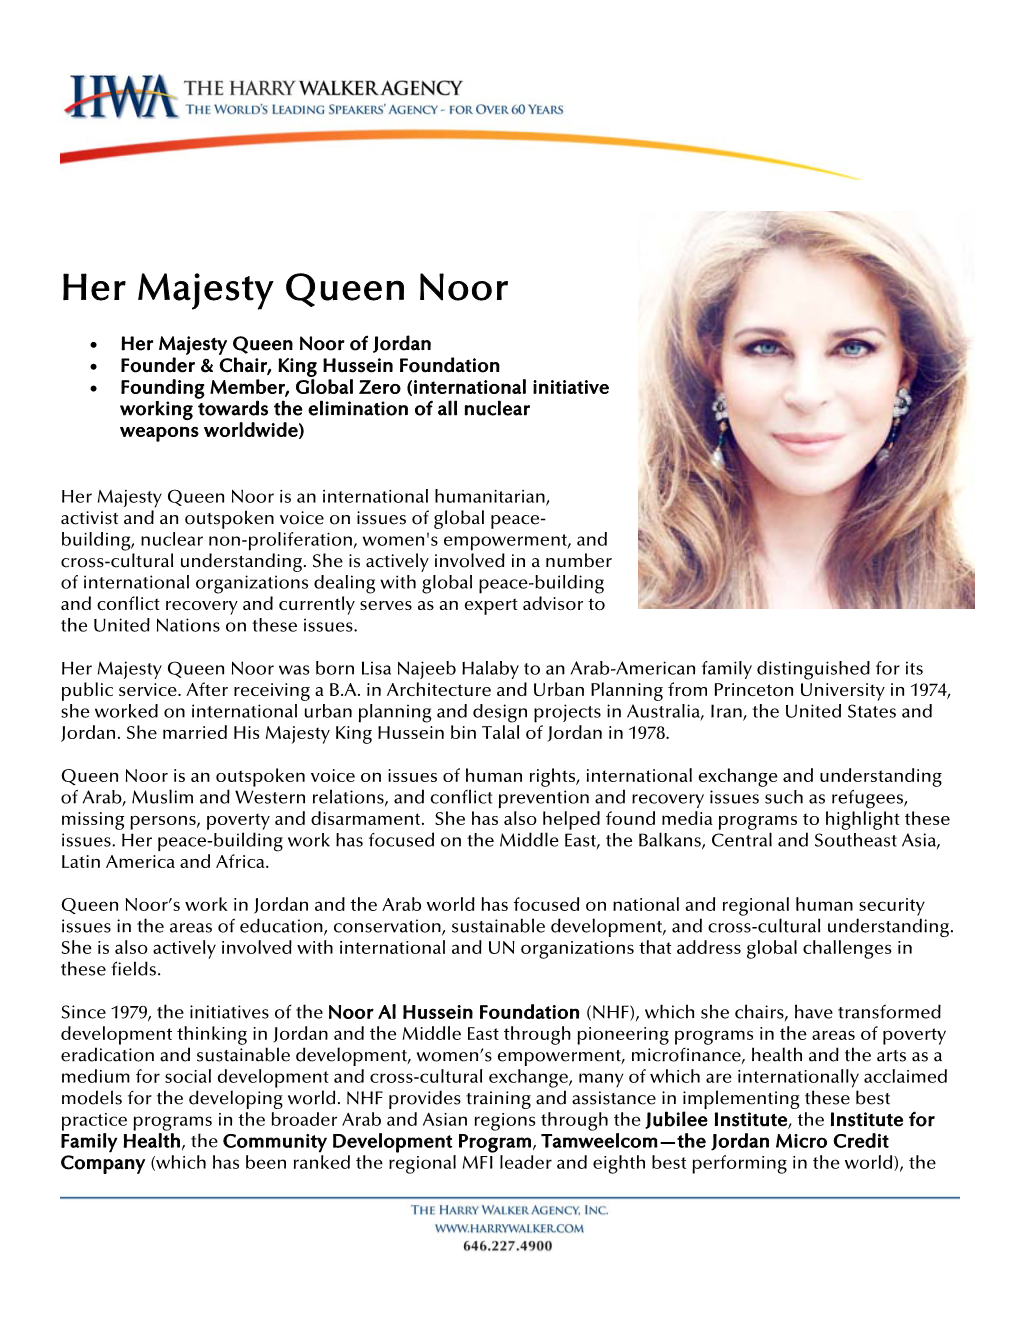 Her Majesty Queen Noor